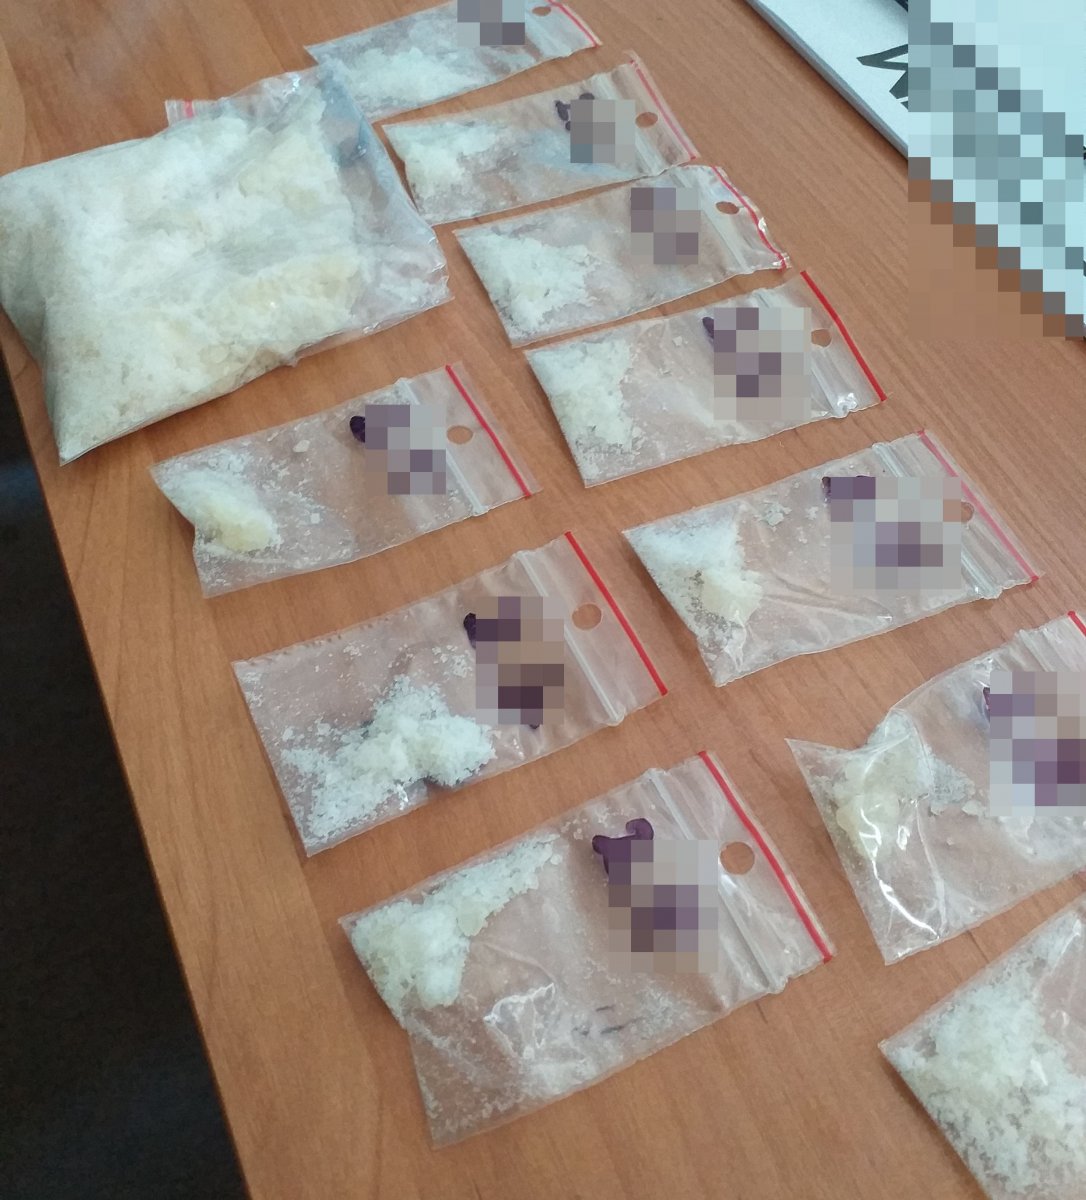 Anonimowa informacja potwierdziła się. Dwoje mieszkańców Puław miało narkotyki (zdjęcia)